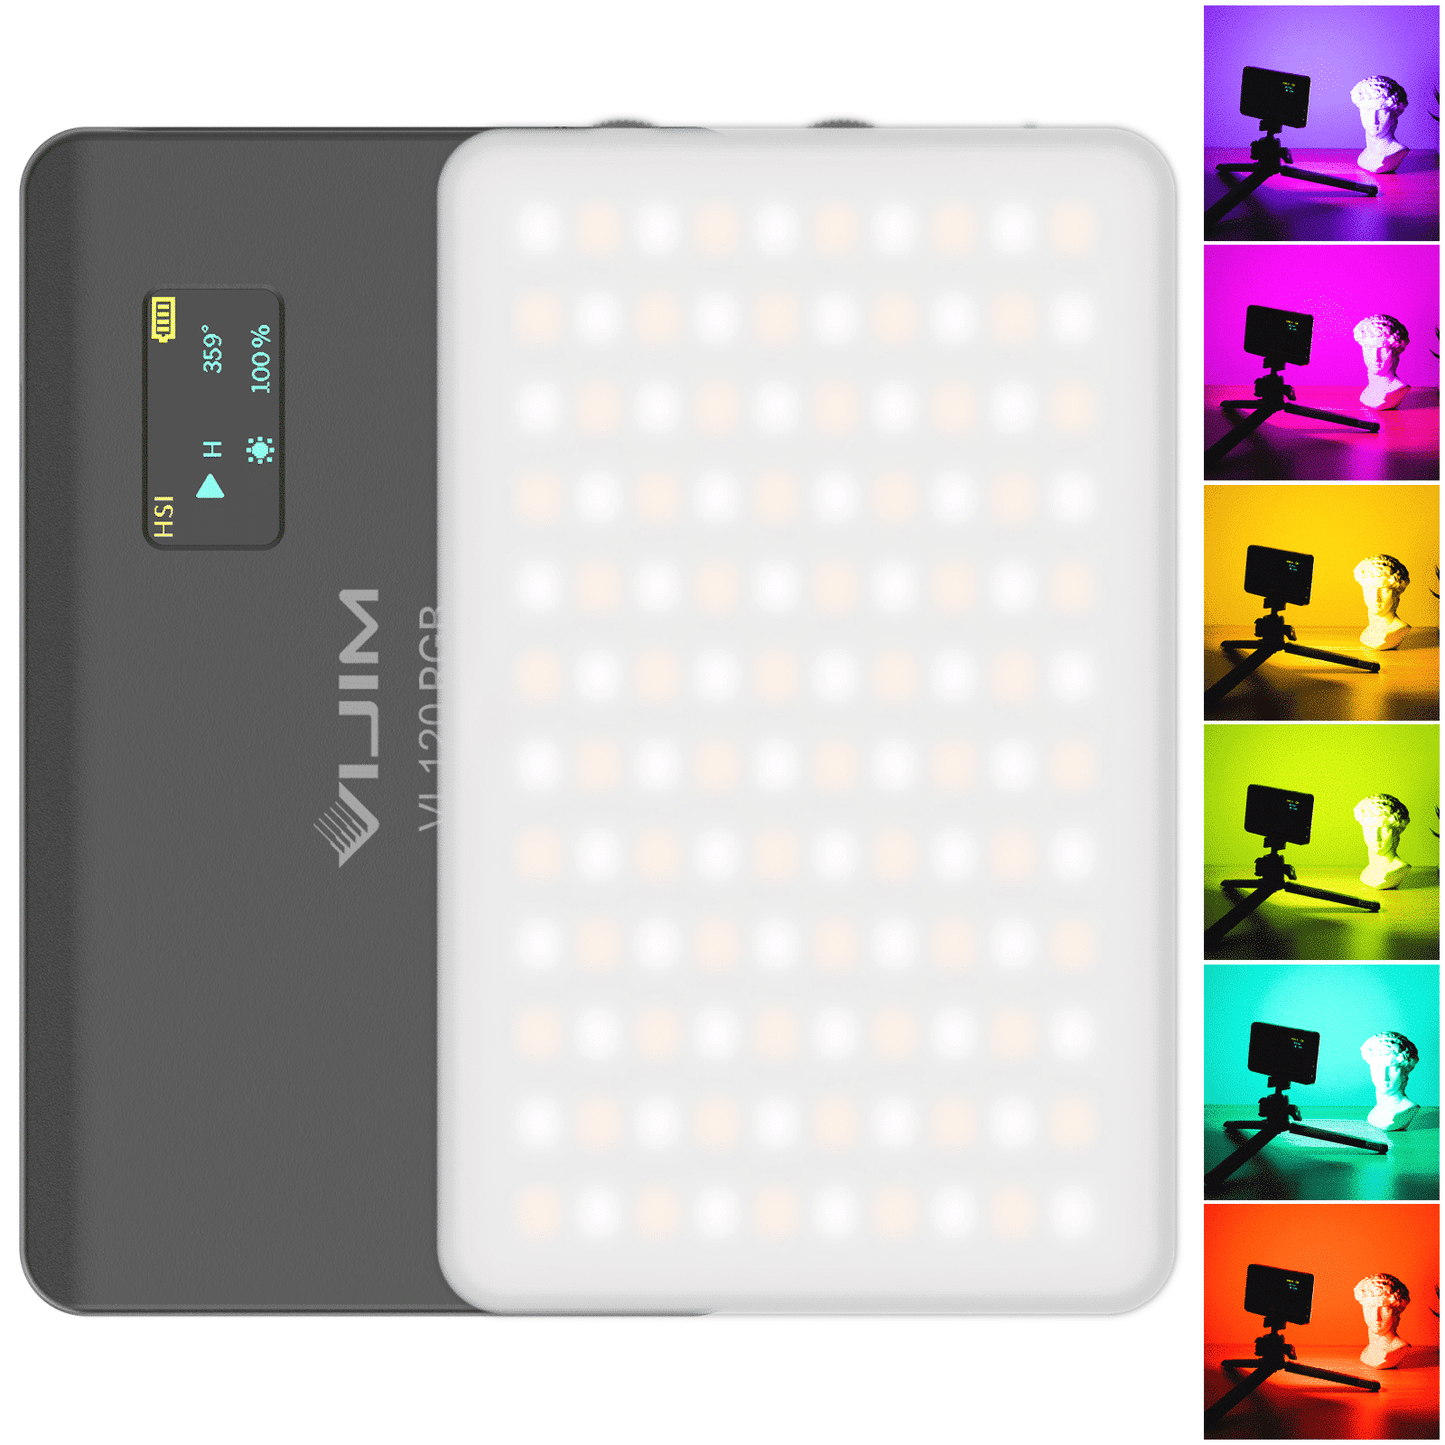 VIJIM VL120 RGB Multi Color LED Video Light